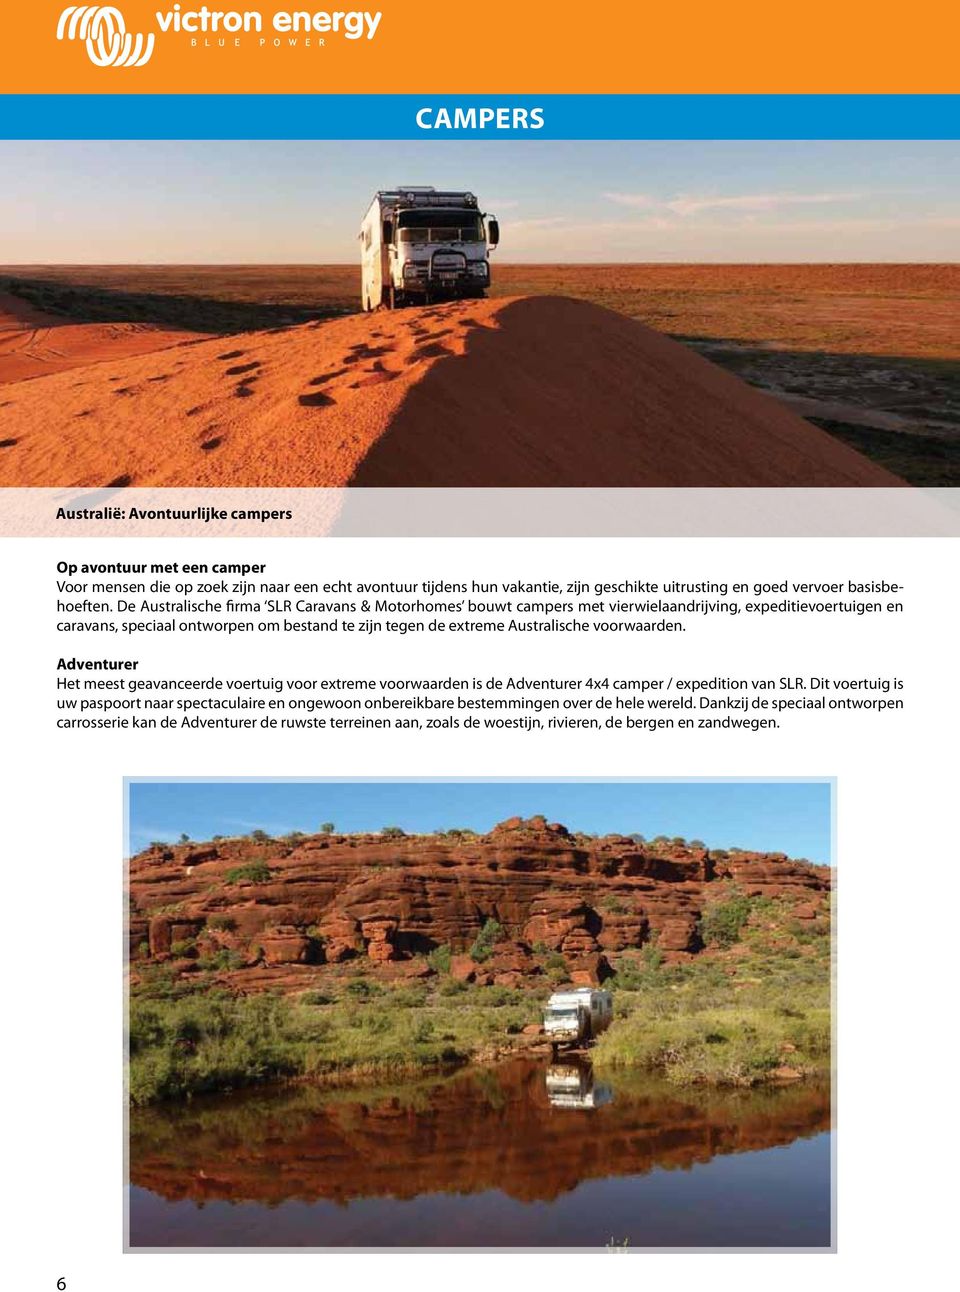 De Australische firma SLR Caravans & Motorhomes bouwt campers met vierwielaandrijving, expeditievoertuigen en caravans, speciaal ontworpen om bestand te zijn tegen de extreme Australische